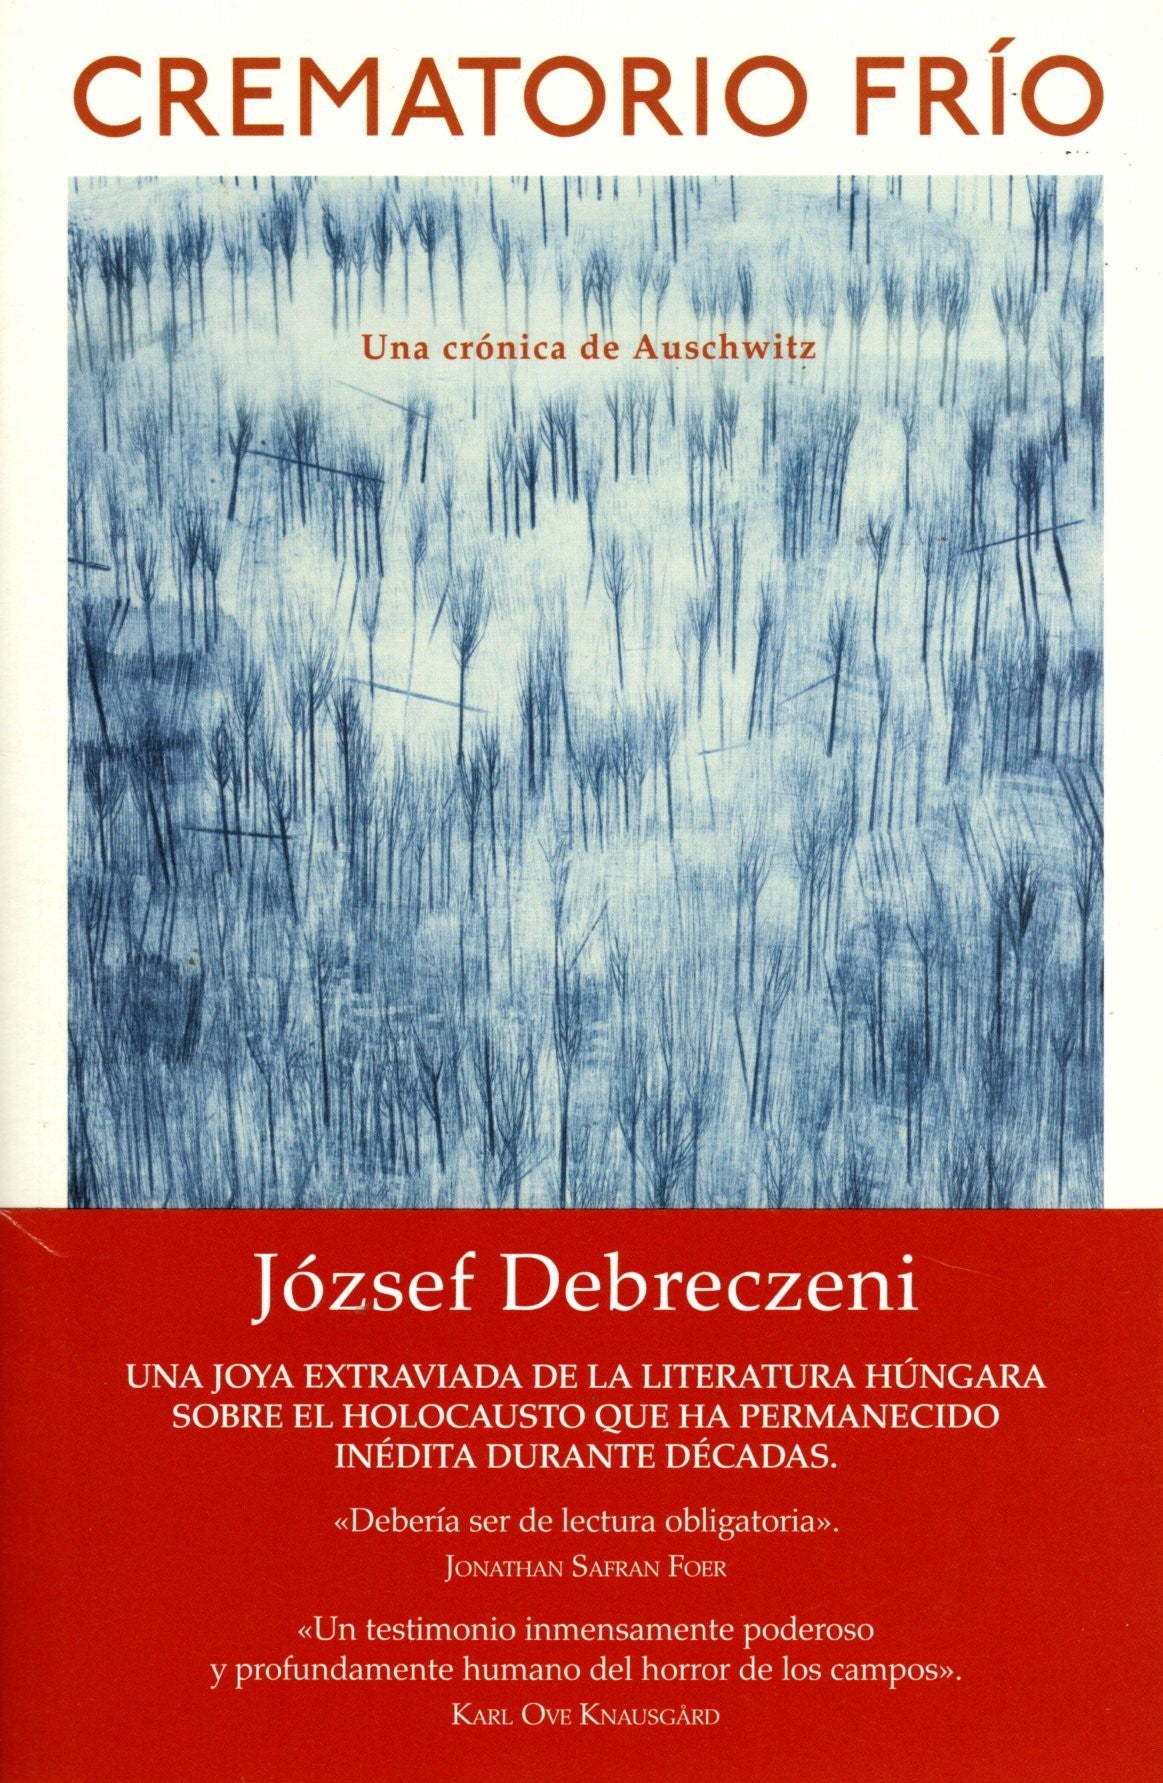 Libro József Debreczeni - Crematorio frío